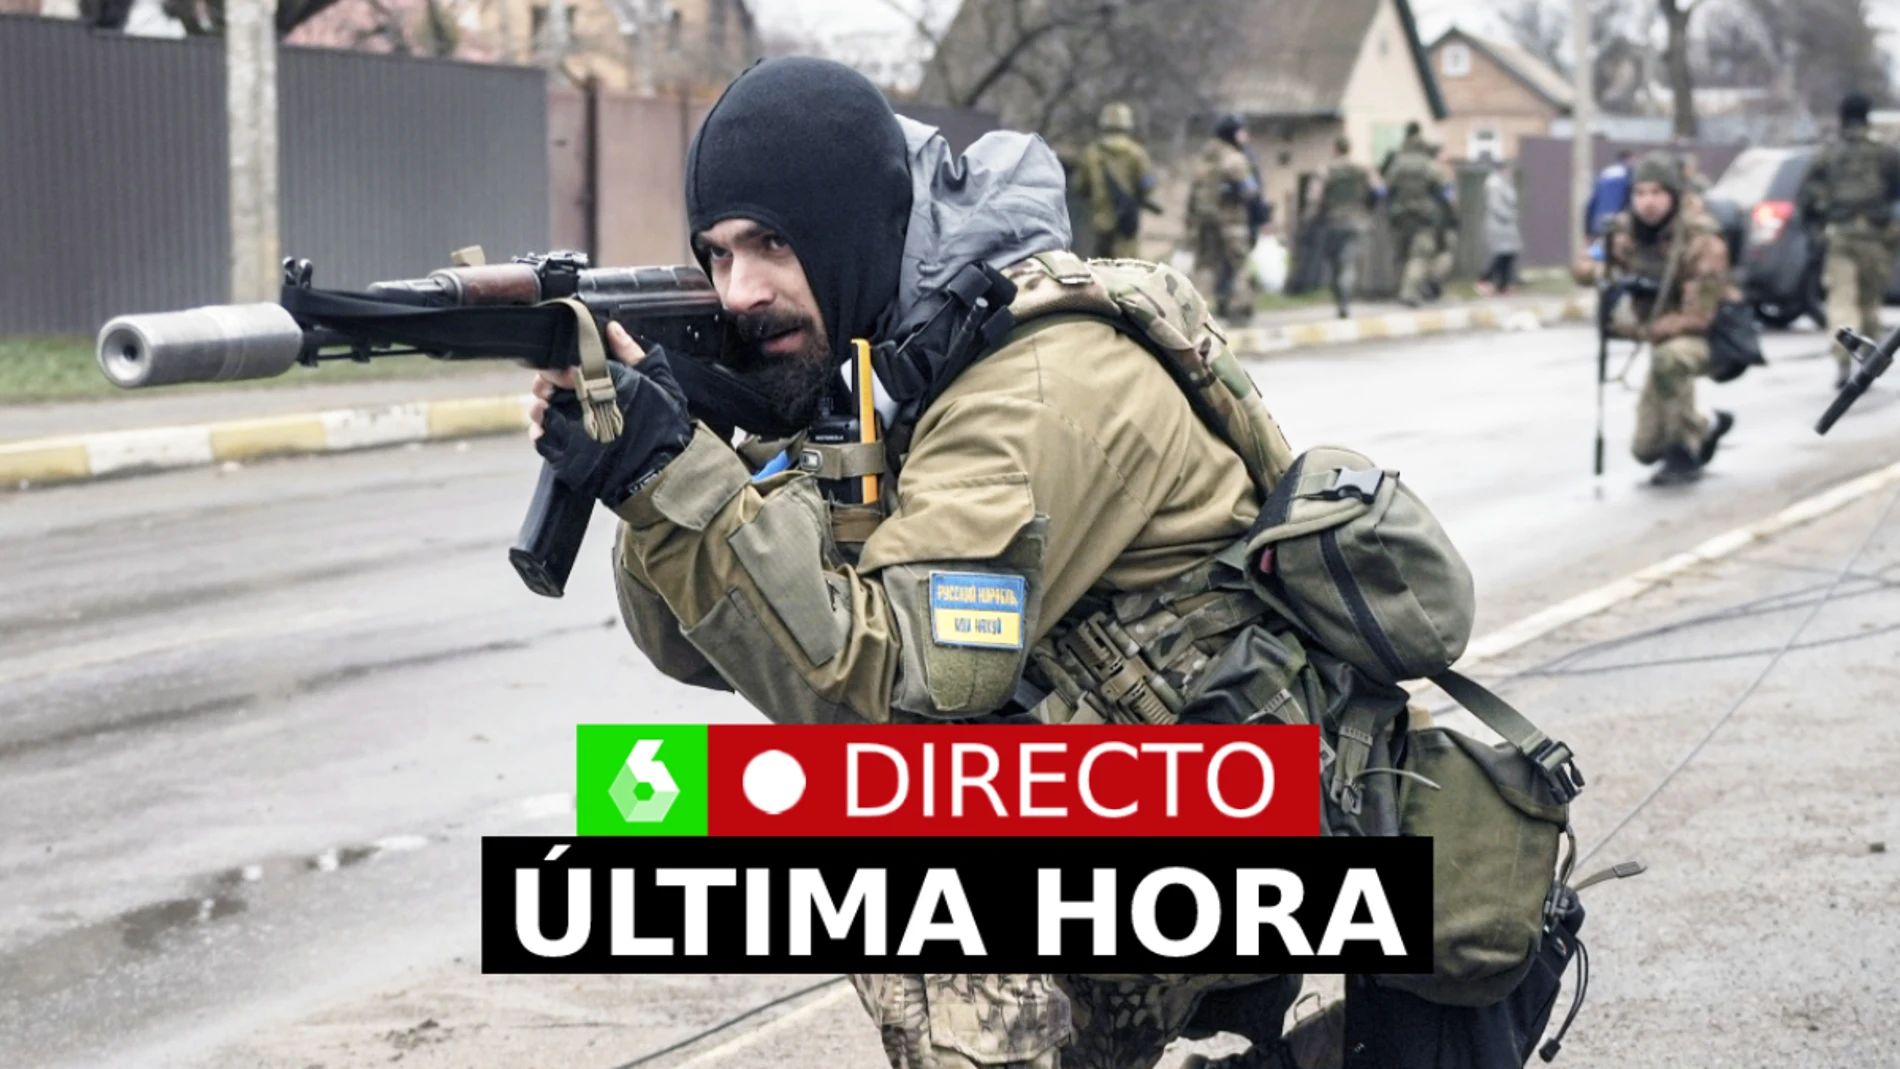 Guerra Ucrania Rusia hoy: Última hora del conflicto, noticias en directo